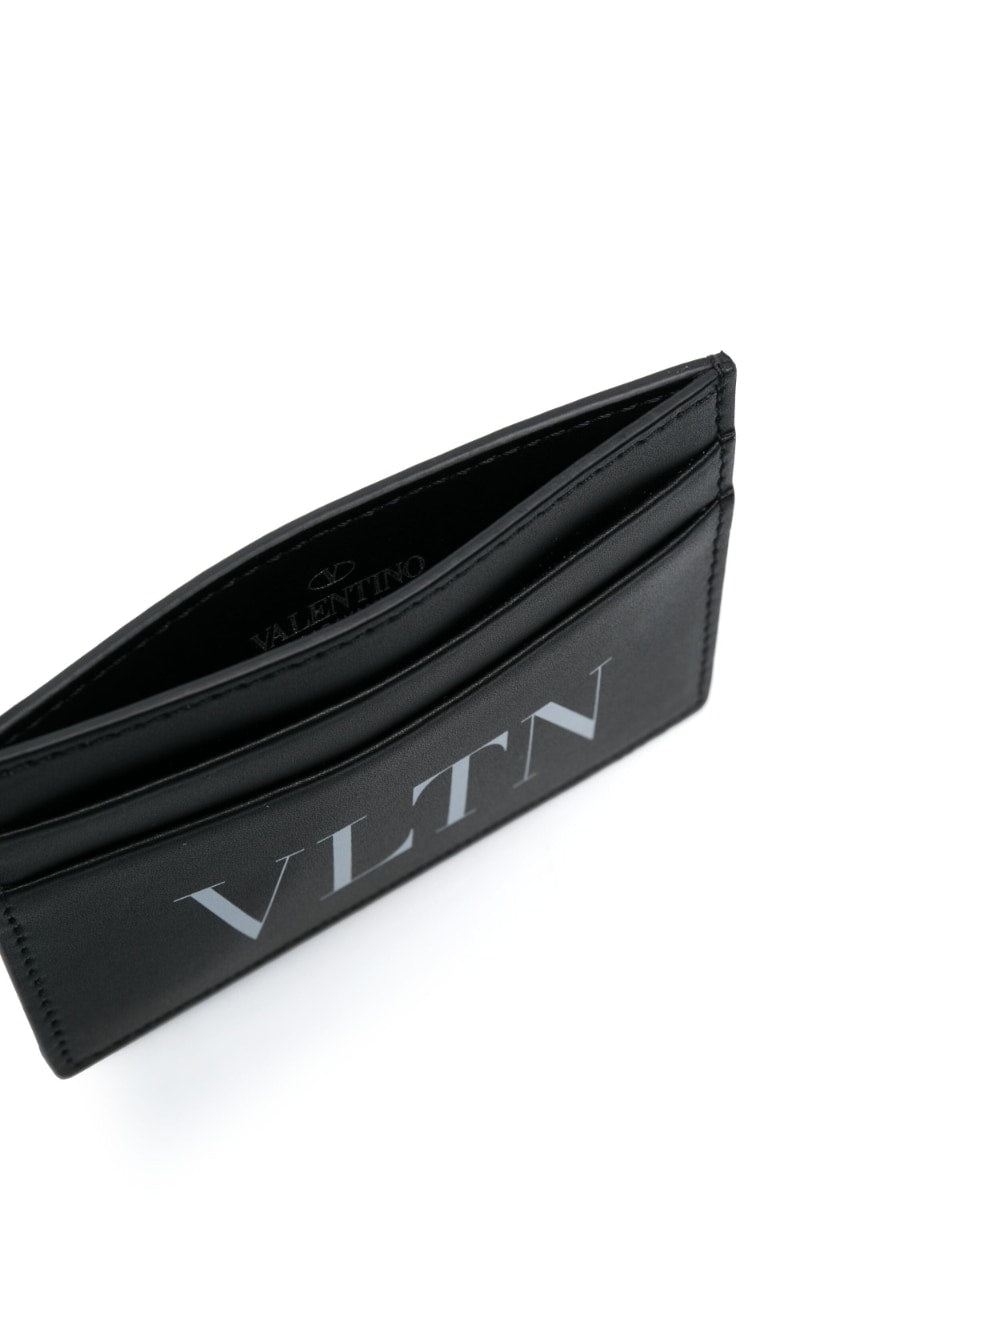 VLTN logo-print cardholder<BR/><BR/><BR/>